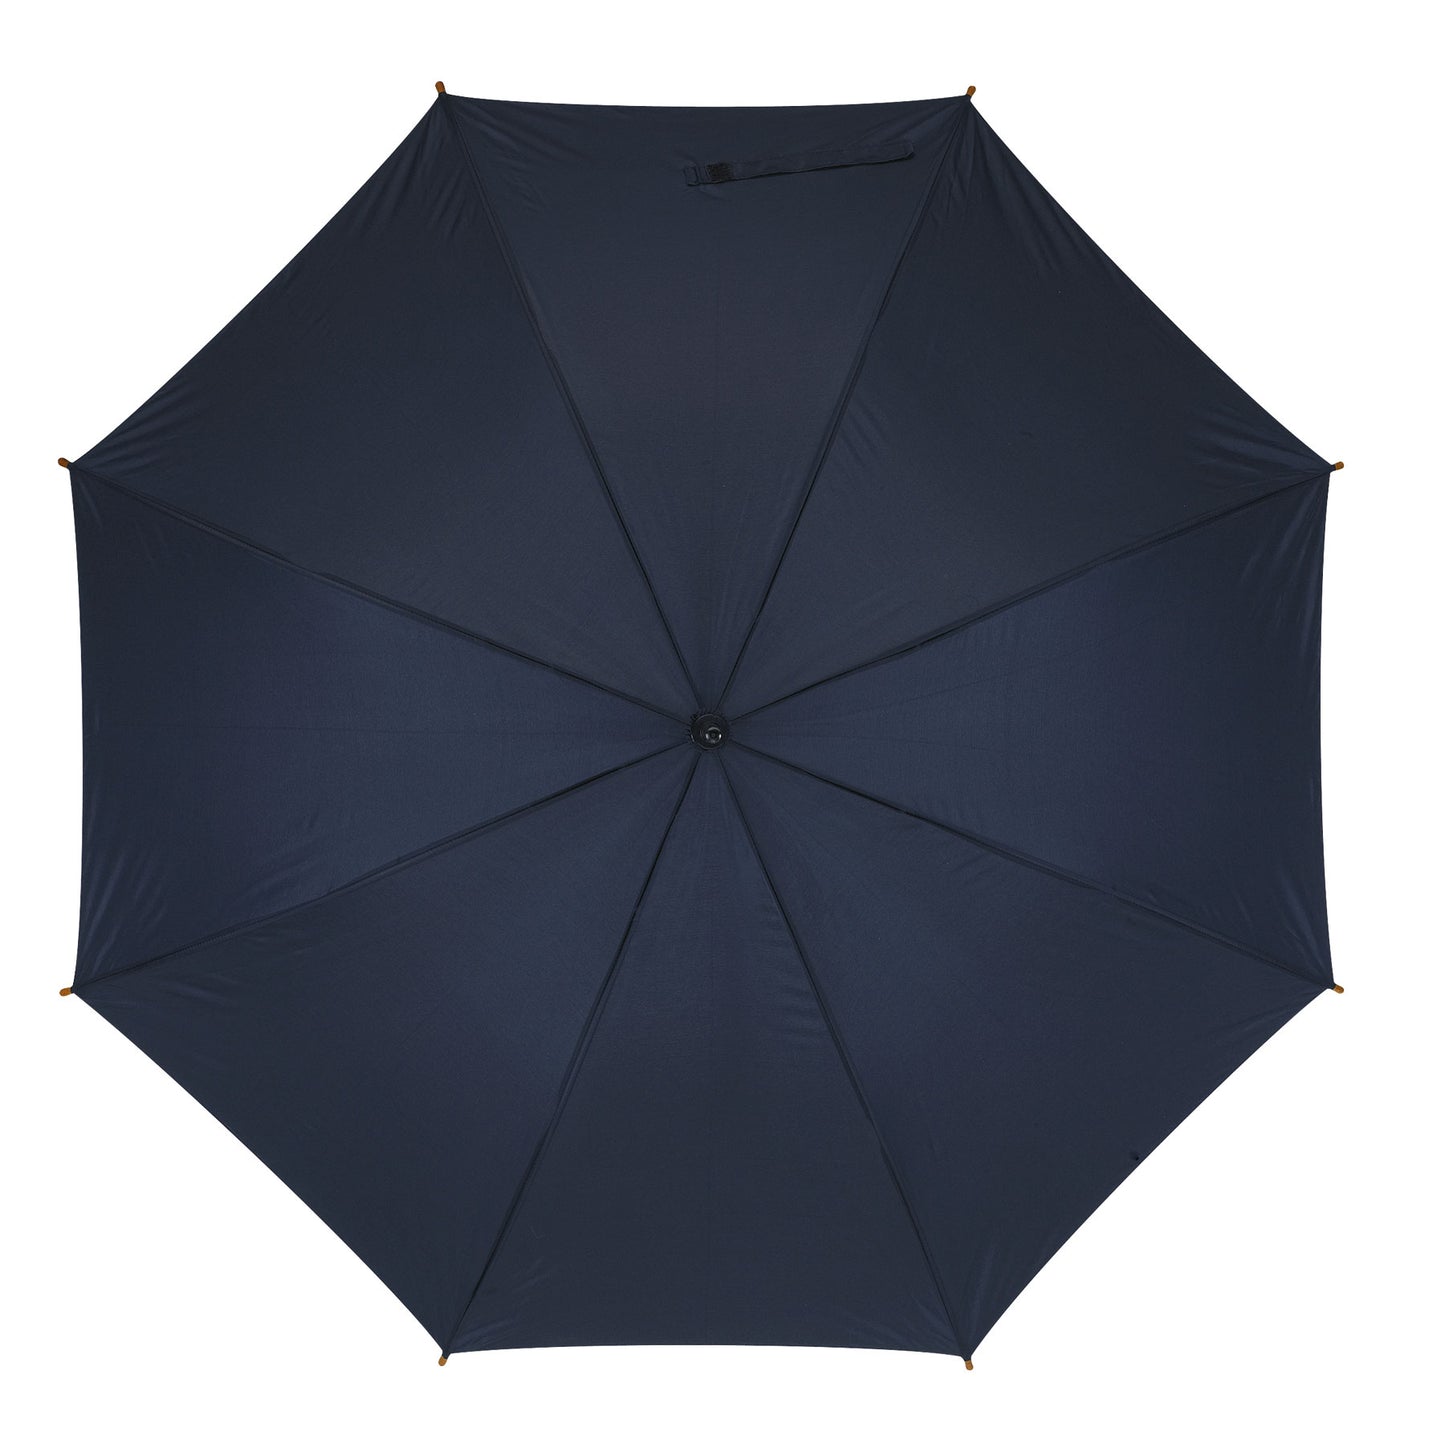 Μπλε μαρίν ομπρέλα βροχής, από αθρακόνημα.